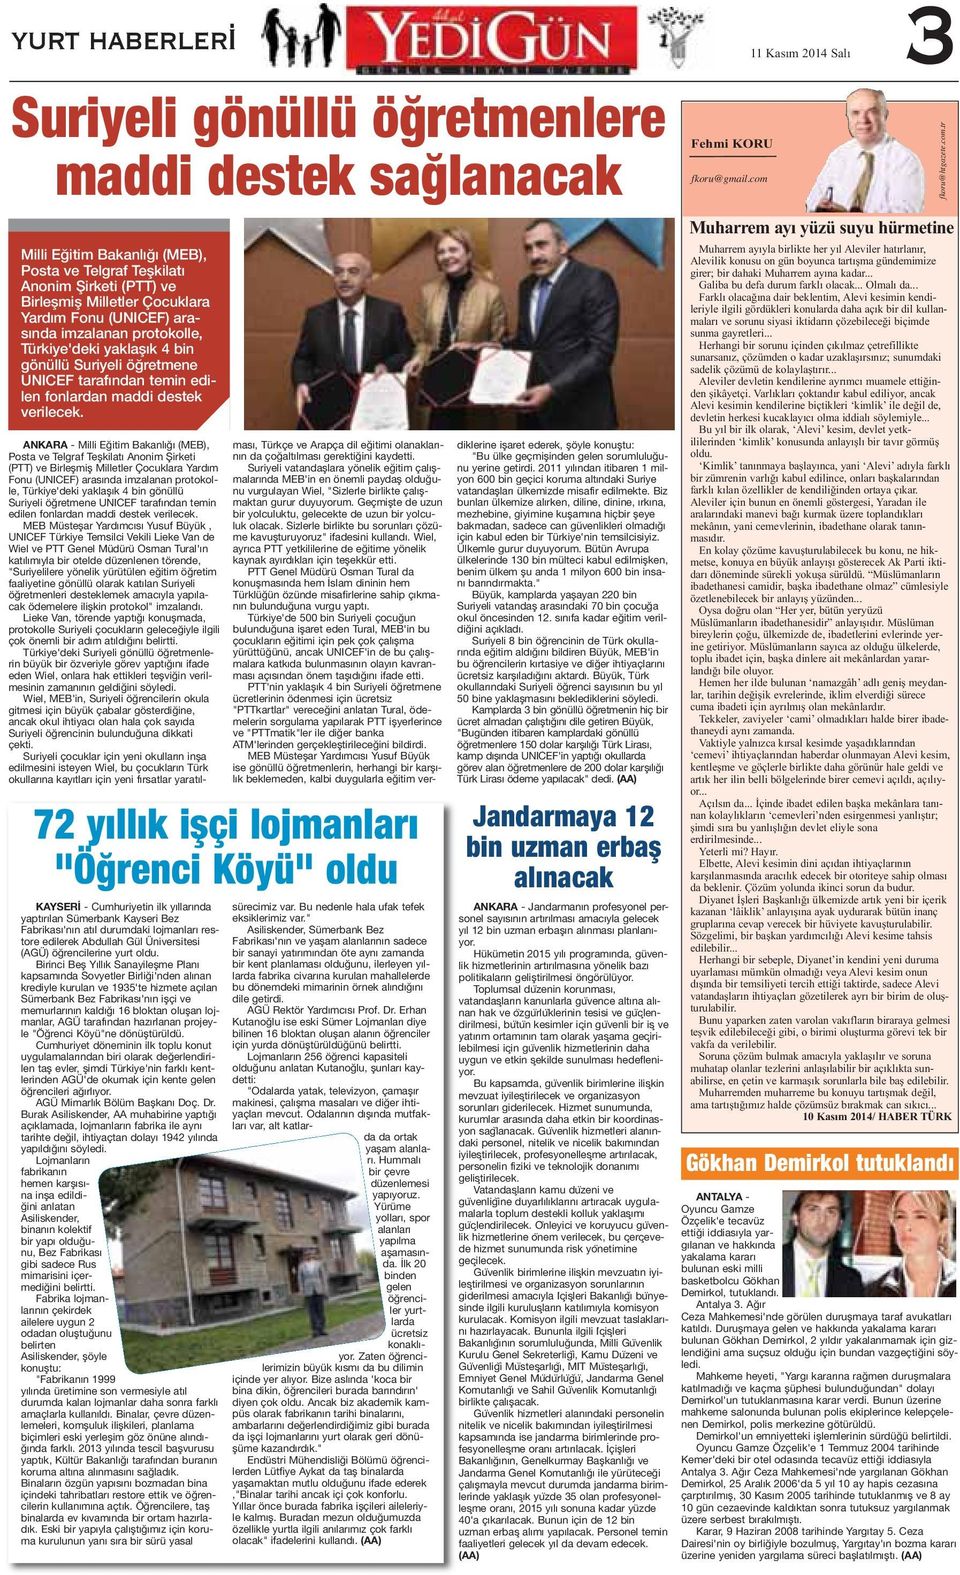 72 yıllık işçi lojmanları "Öğrenci Köyü" oldu KAYSERİ - Cumhuriyetin ilk yıllarında yaptırılan Sümerbank Kayseri Bez Fabrikası'nın atıl durumdaki lojmanları restore edilerek Abdullah Gül Üniversitesi